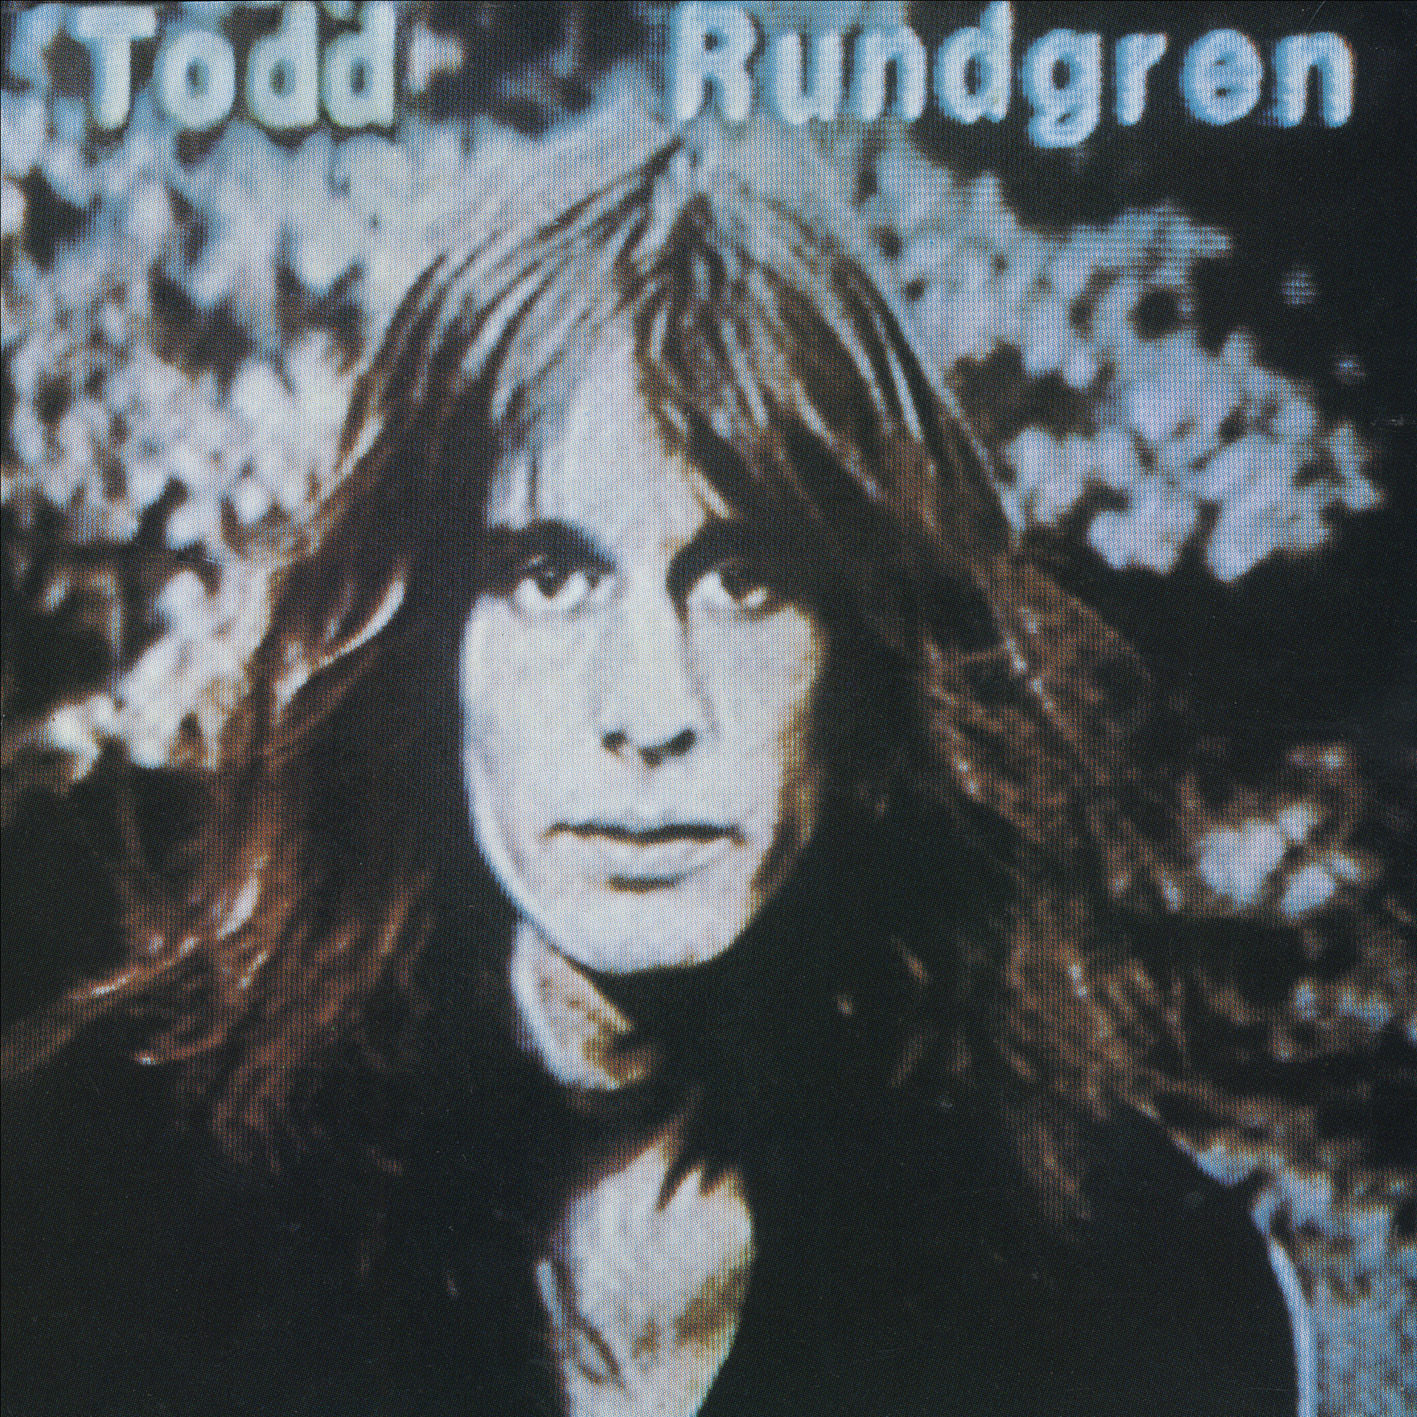 Todd Rundgren – Hermit Of Mink Hollow (1978/2013) [HDTracks FLAC 24bit/192kHz]